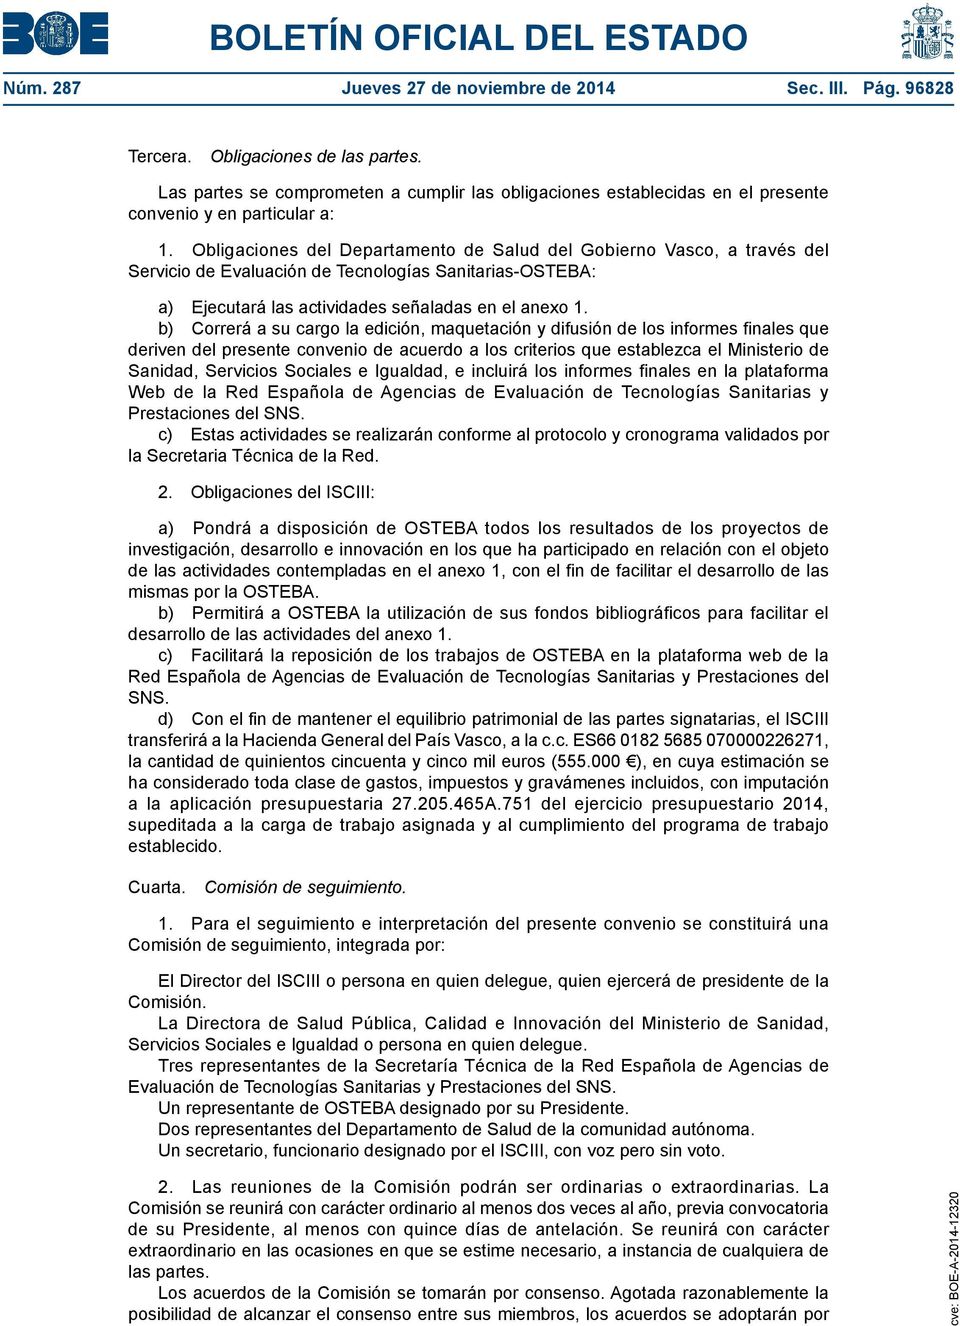 Obligaciones del Departamento de Salud del Gobierno Vasco, a través del Servicio de Evaluación de Tecnologías Sanitarias-OSTEBA: a) Ejecutará las actividades señaladas en el anexo 1.